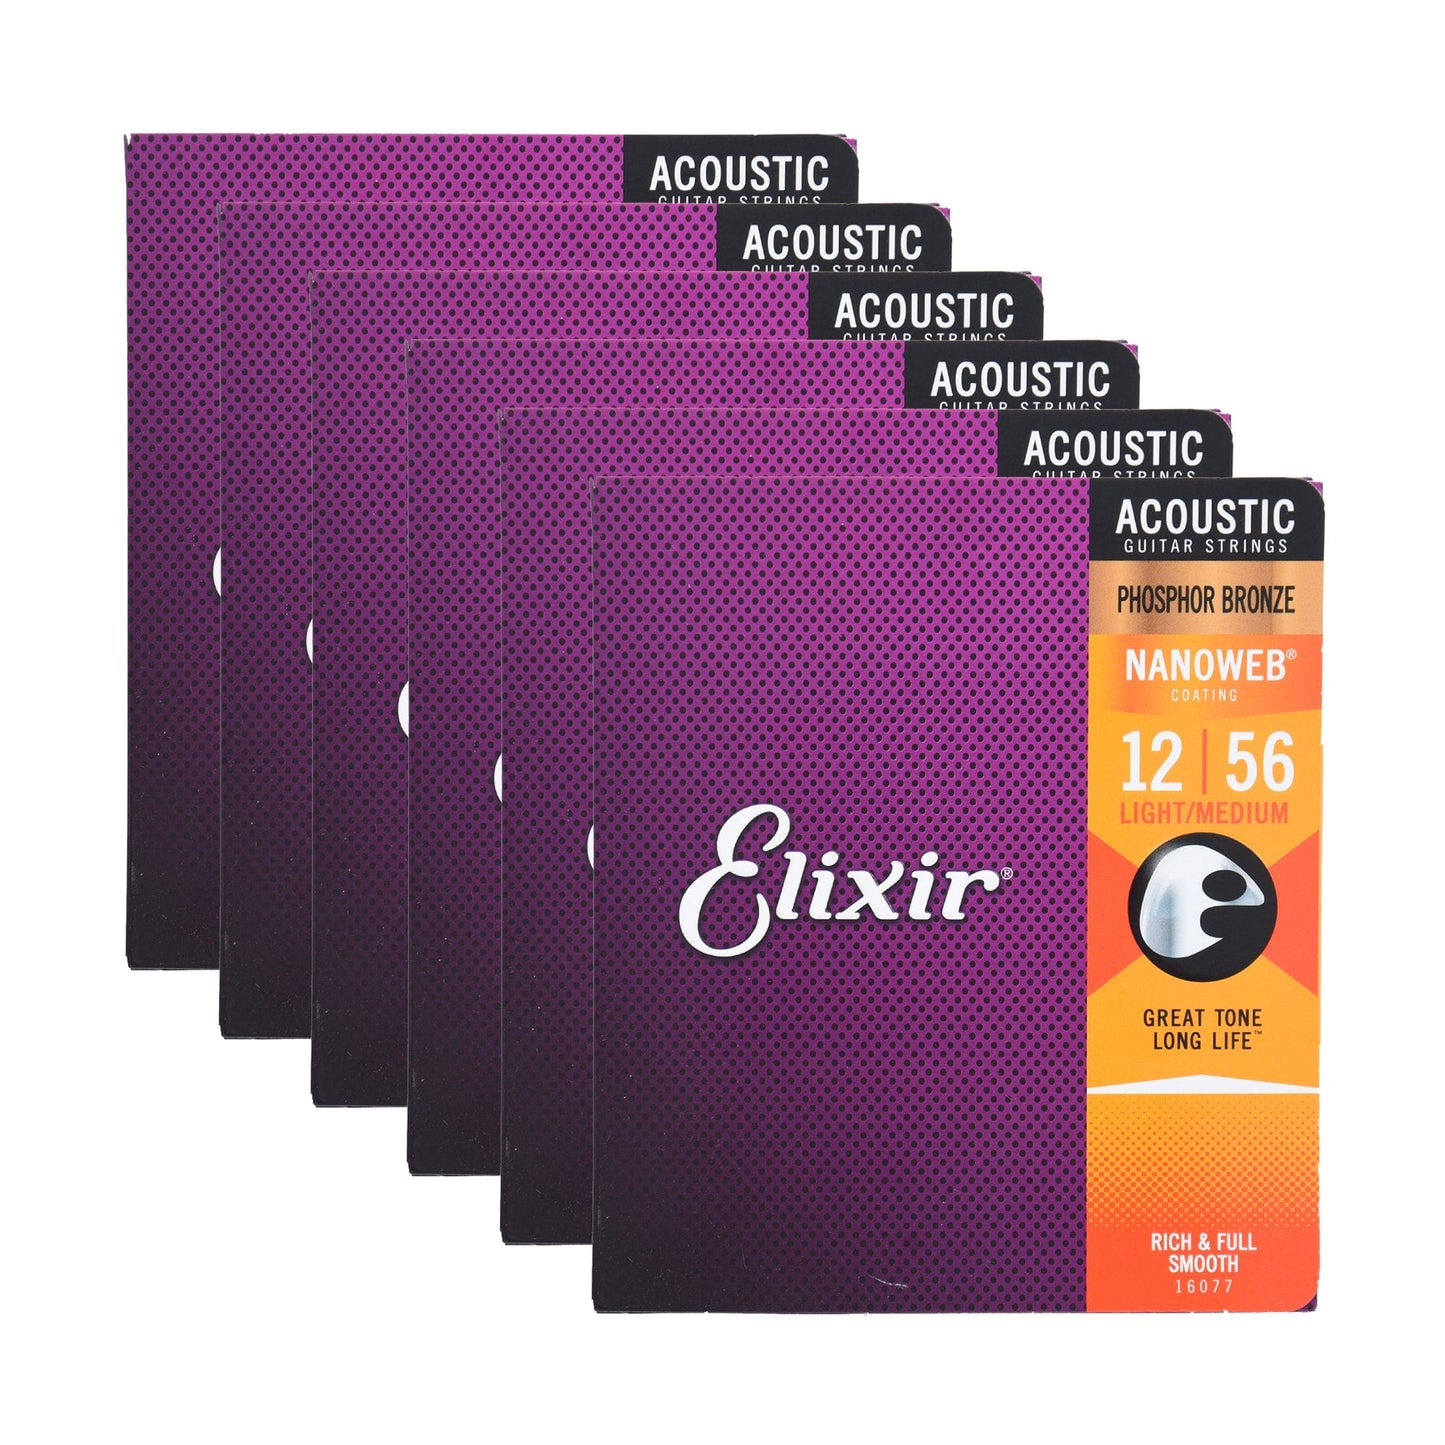 Elixir 16077 Acoustic Phospher Bronze Nanoweb Light-Medium 12-56 6 Pack Bundle Accessories / Strings / Guitar Strings